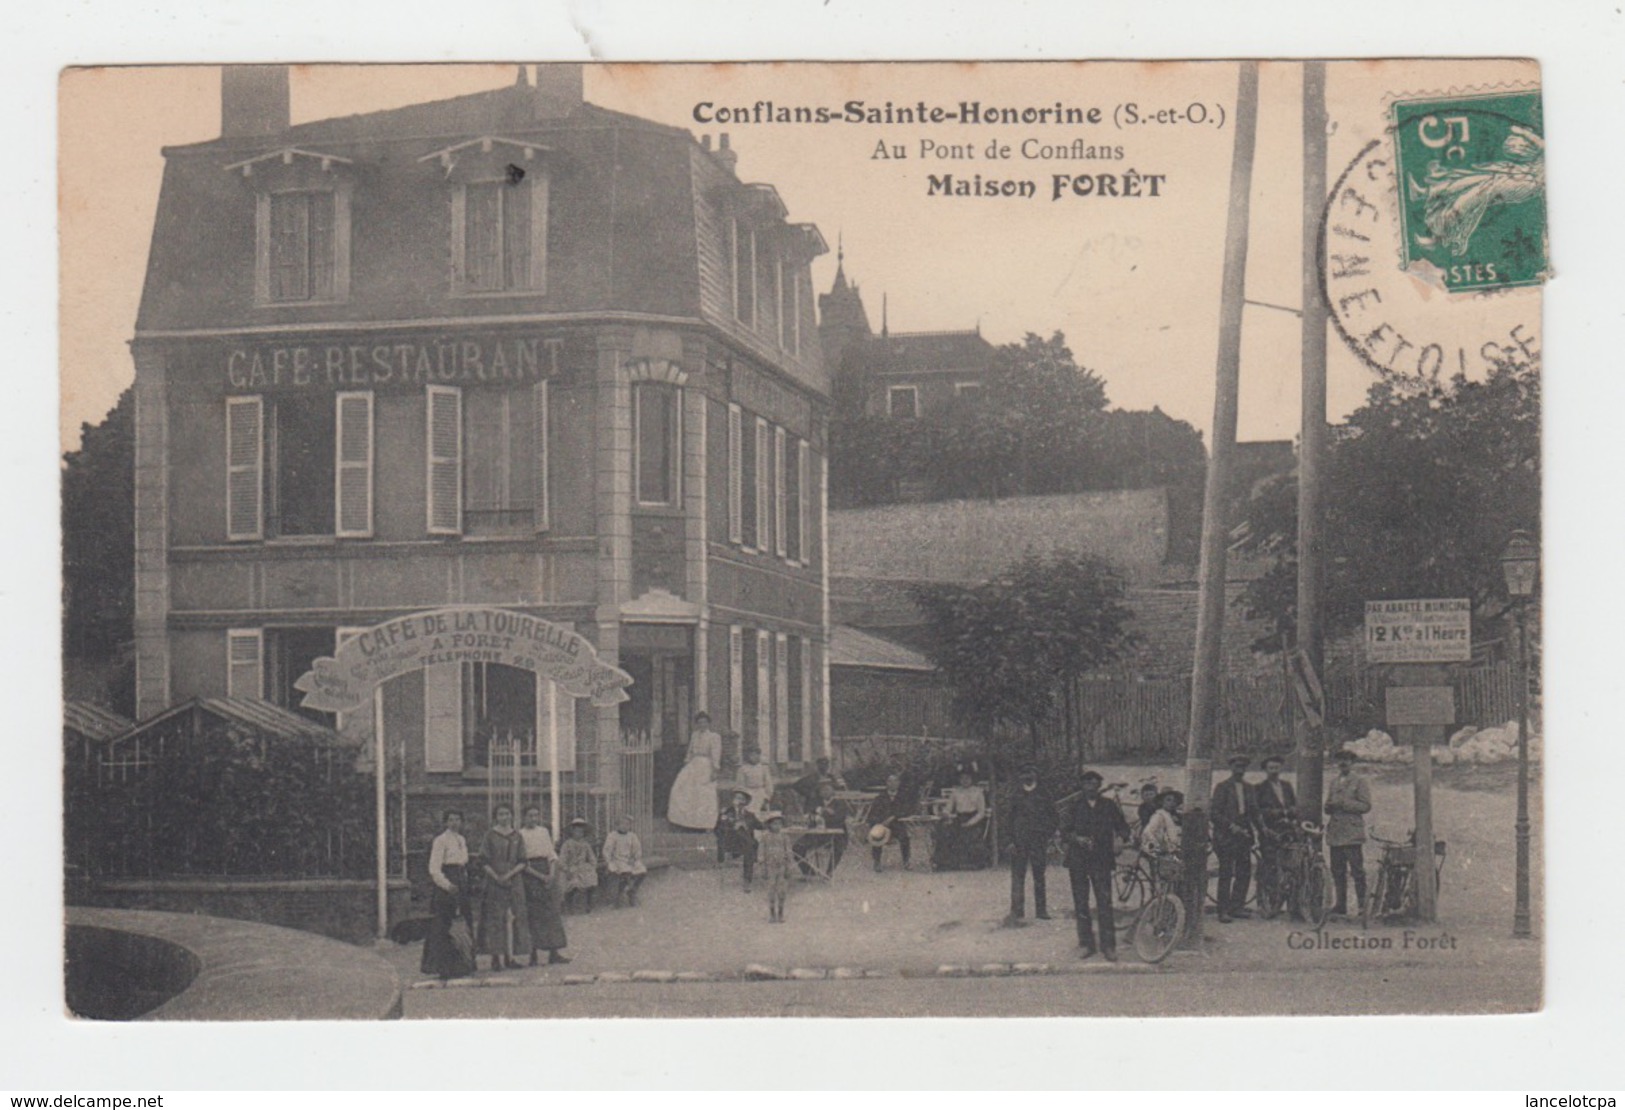 78 - CONFLANS SAINTE HONORINE / AU PONT DE CONFLANS - CAFE RESTAURANT - MAISON FORET - Conflans Saint Honorine